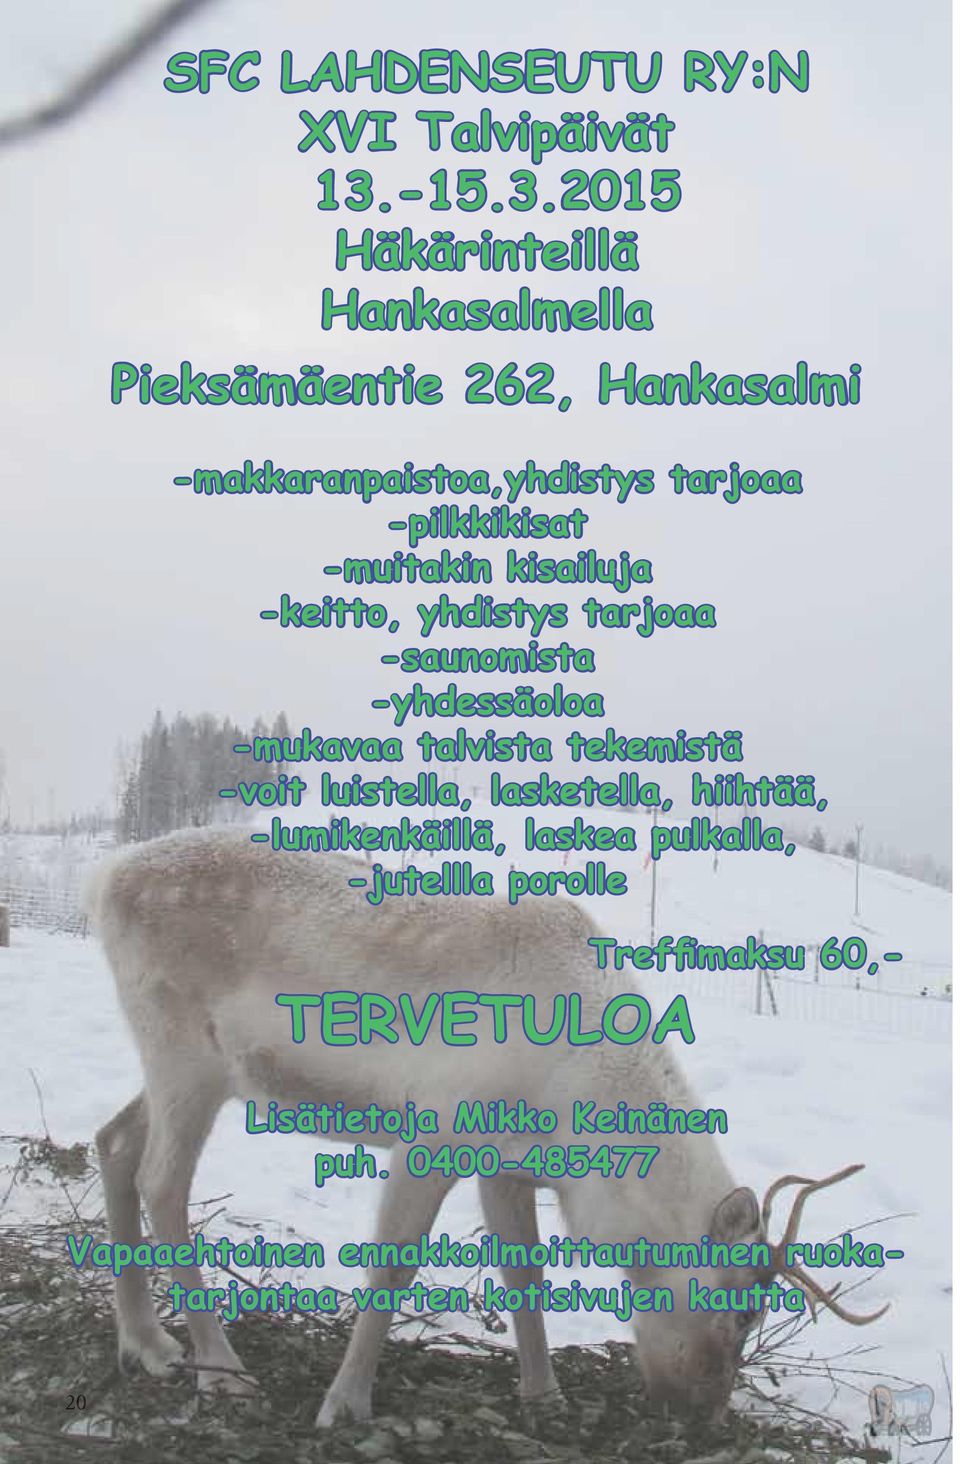 2015 Häkärinteillä Hankasalmella Pieksämäentie 262, Hankasalmi -makkaranpaistoa,yhdistys tarjoaa -pilkkikisat -muitakin